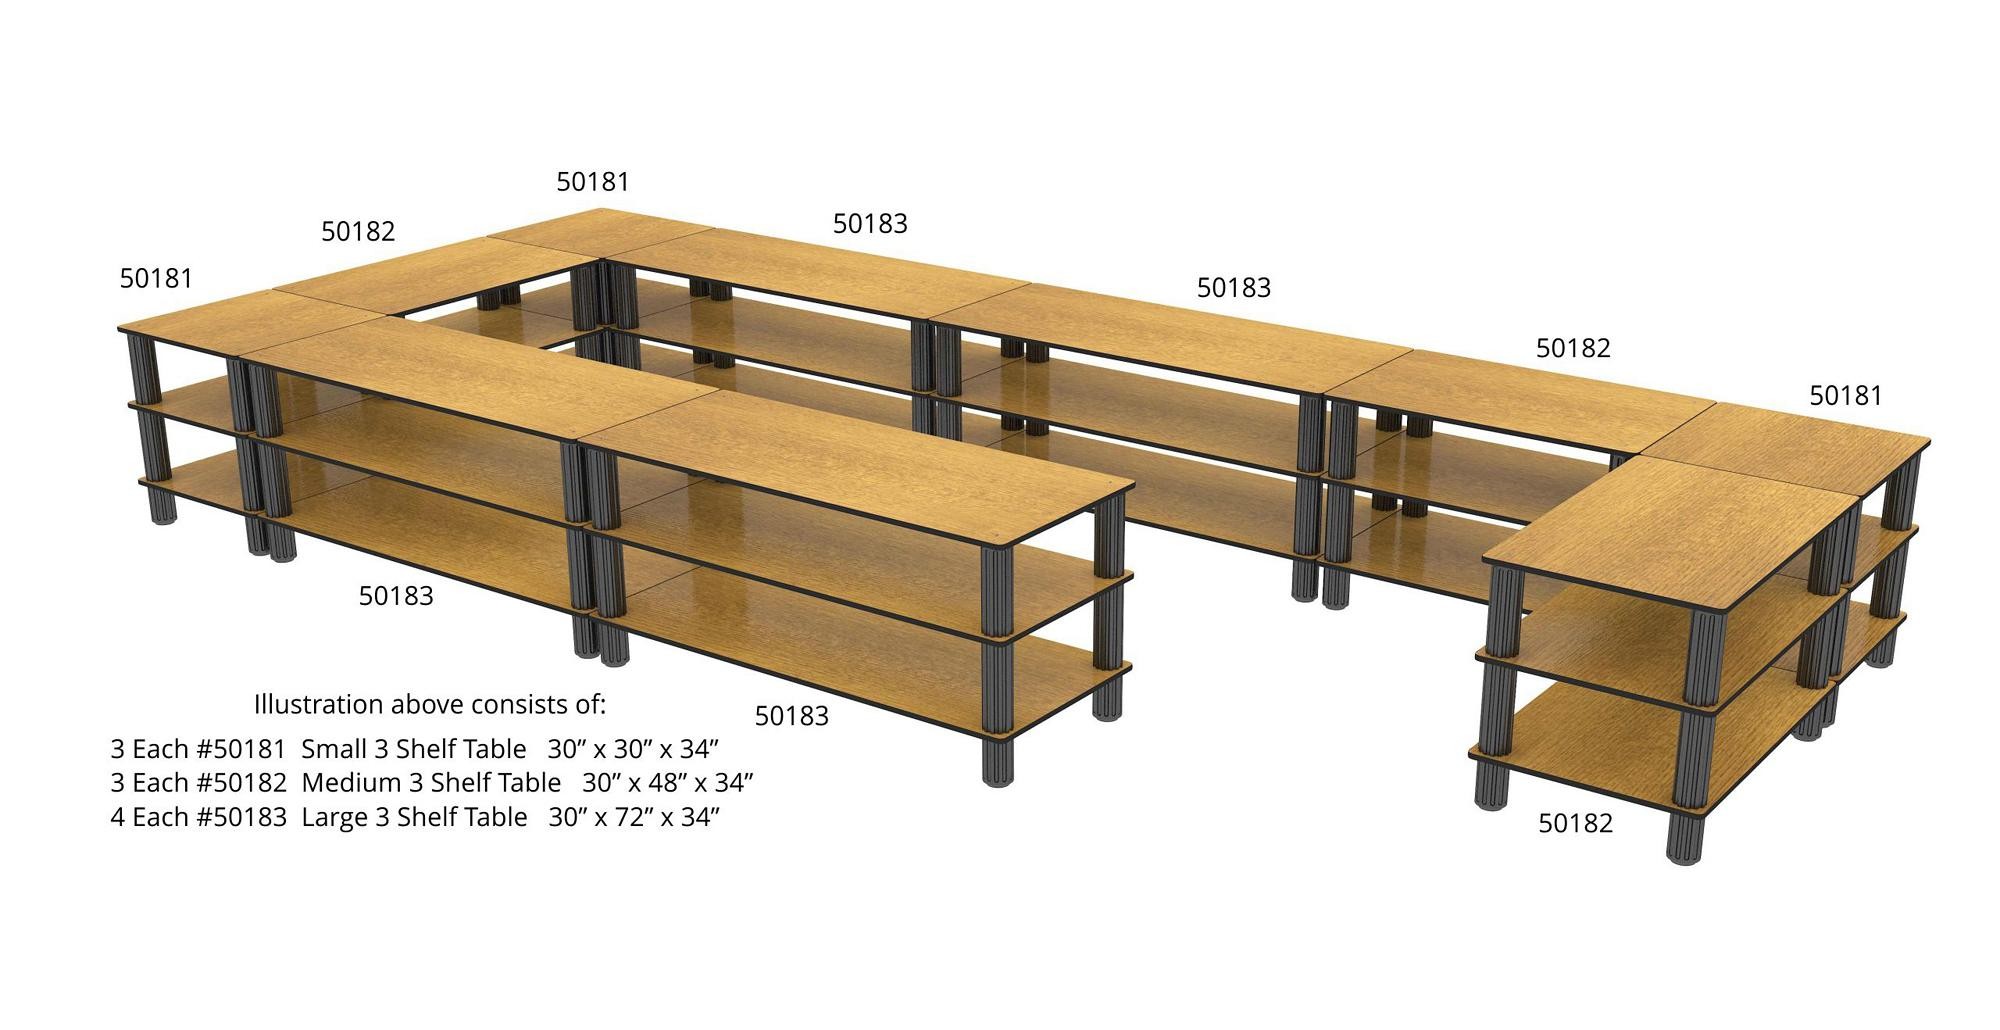 Bon Chef 50196LVWALNUT Medium Corner Shelf Flex Table with Walnut Finish, 30" x 48" x 46"